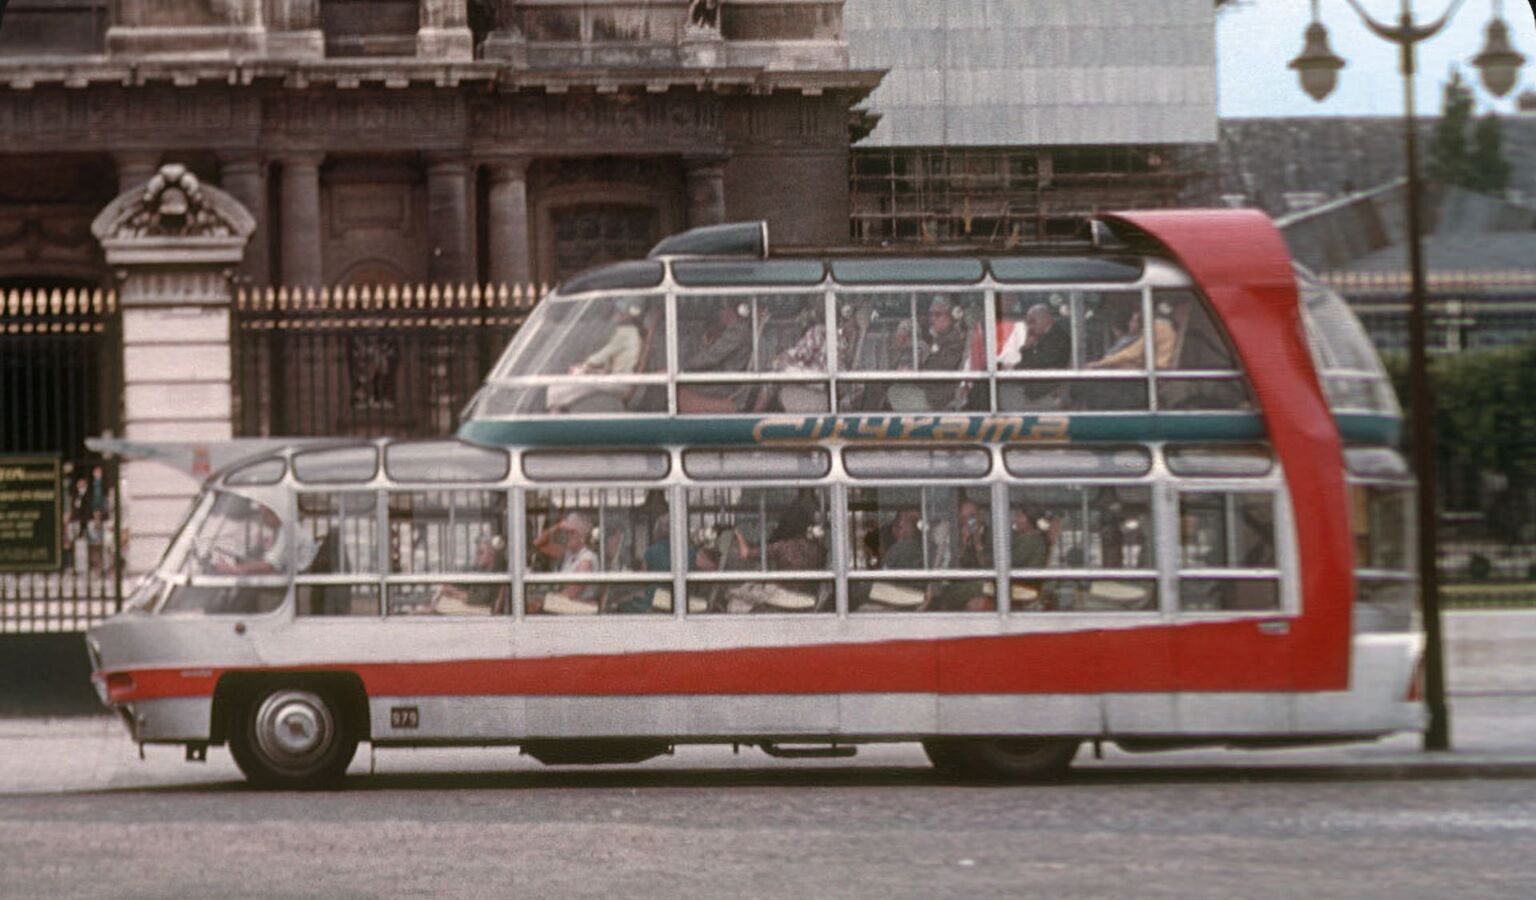 Унікальні автобуси працювали в Парижі до початку 80-х, а потім були замінені на більш сучасні утилітарні моделі​​​​​